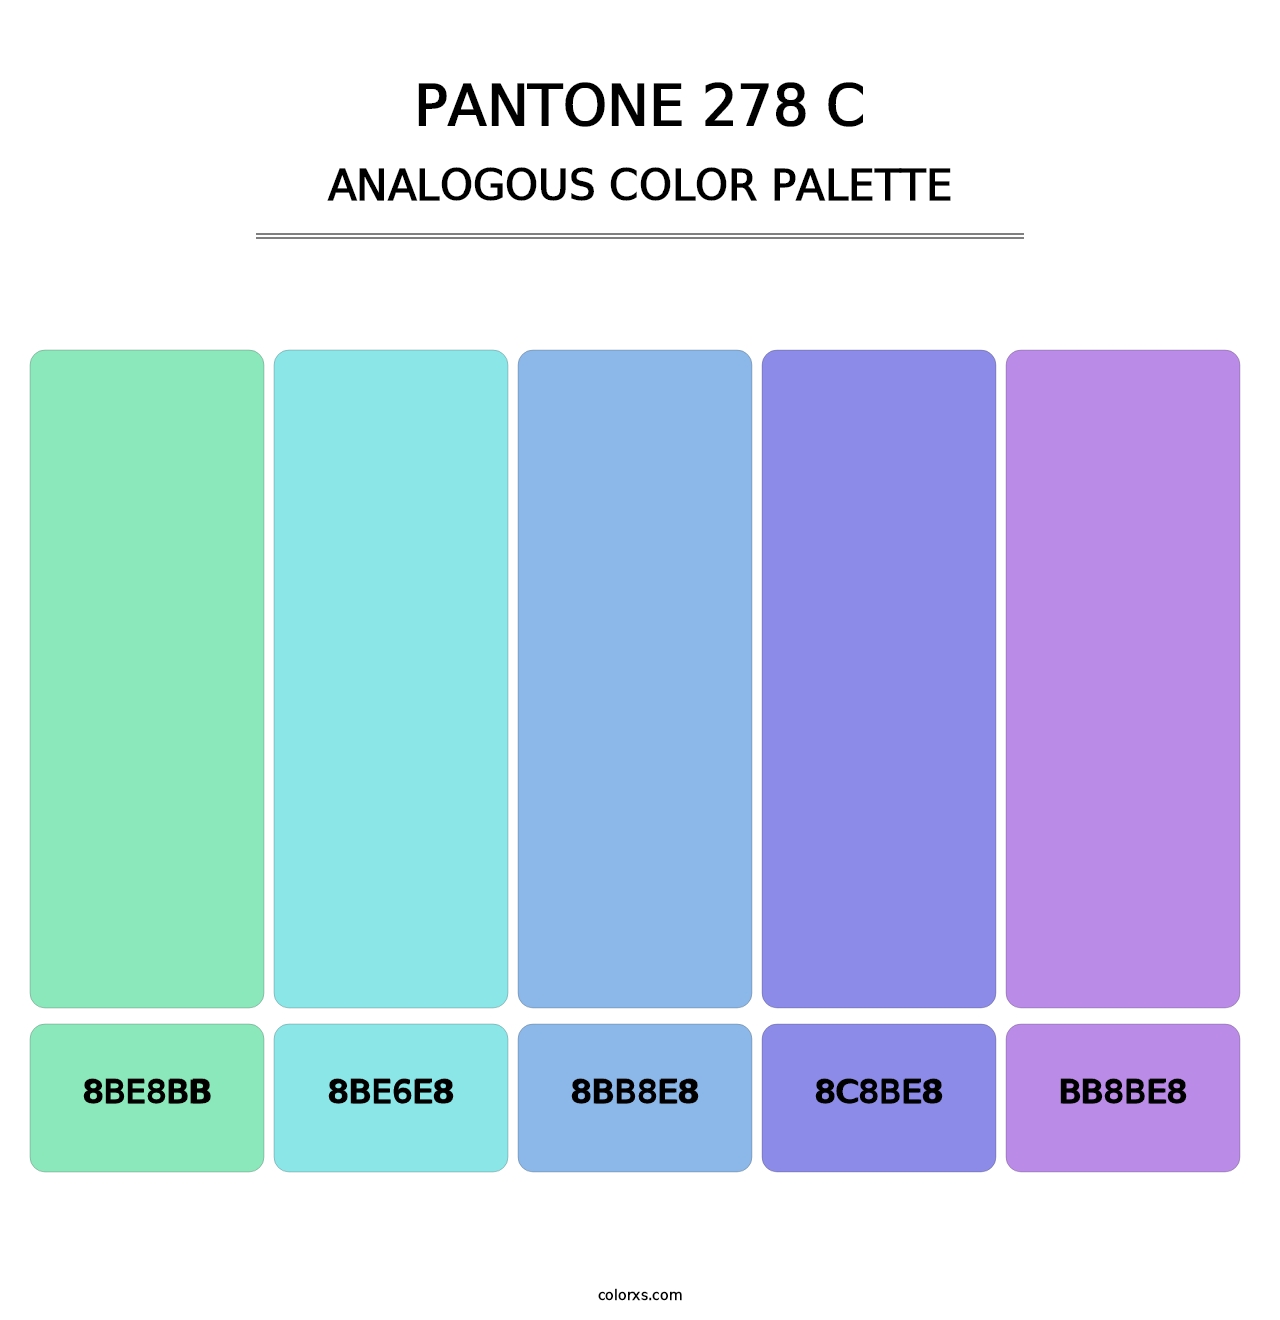 PANTONE 278 C - Analogous Color Palette